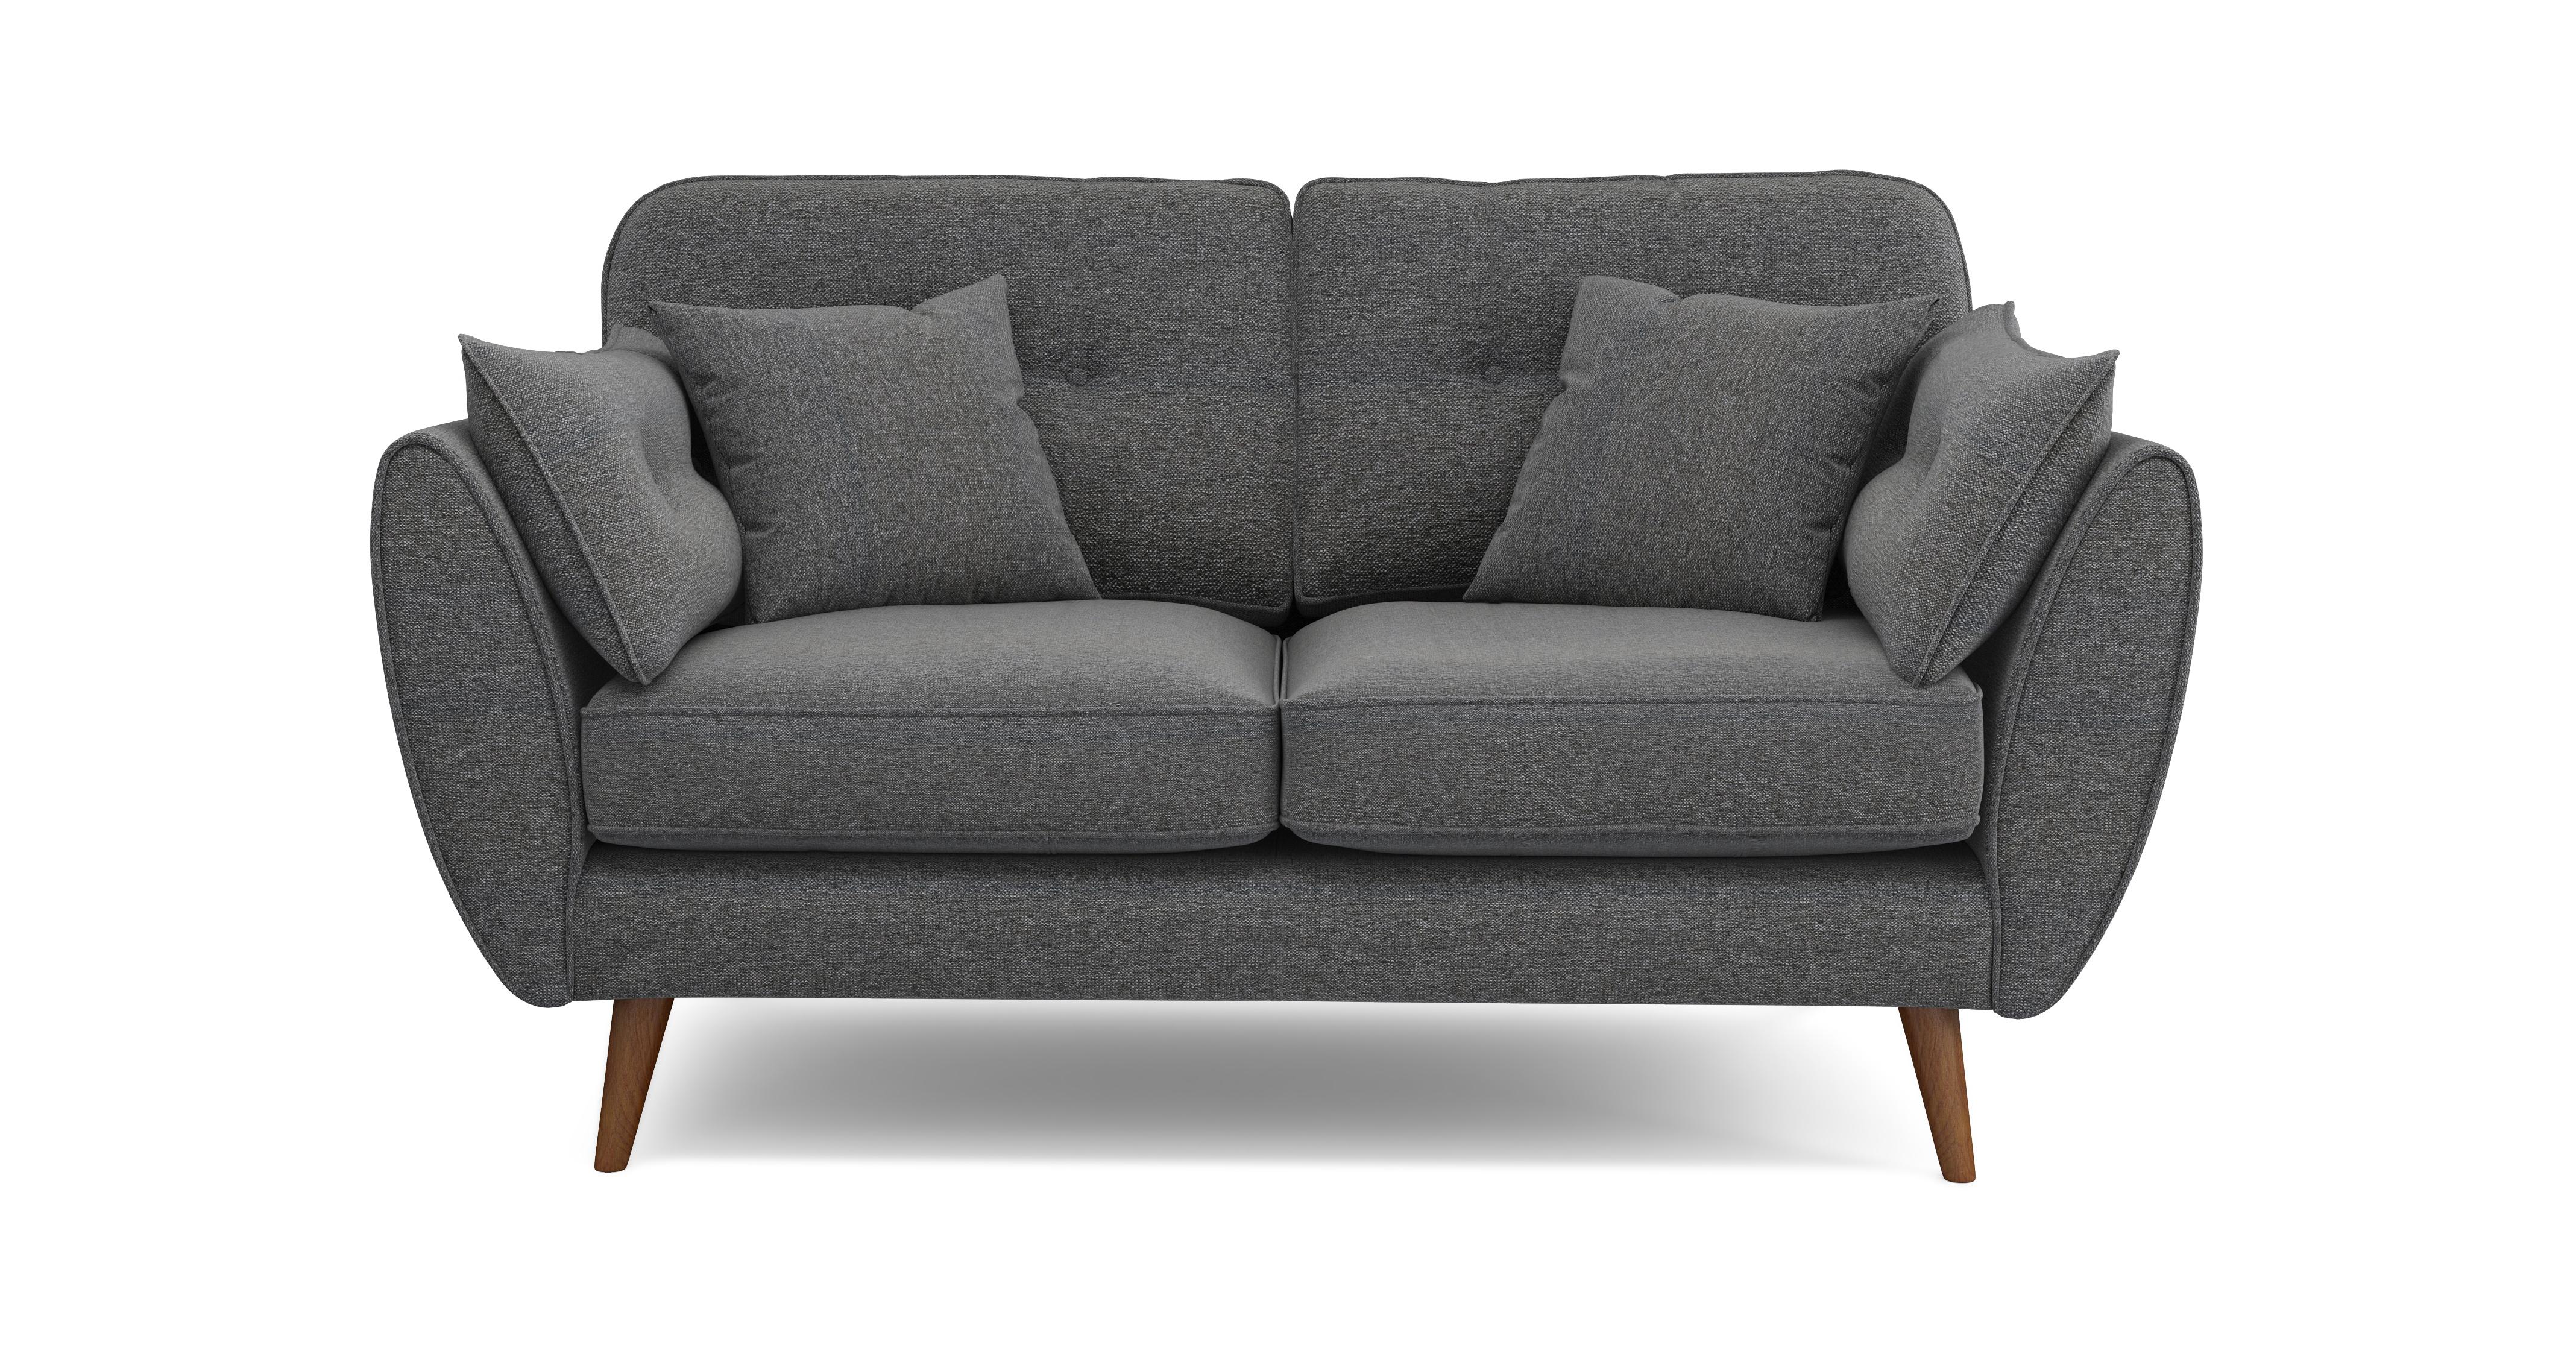 dfs zinc leather sofa review